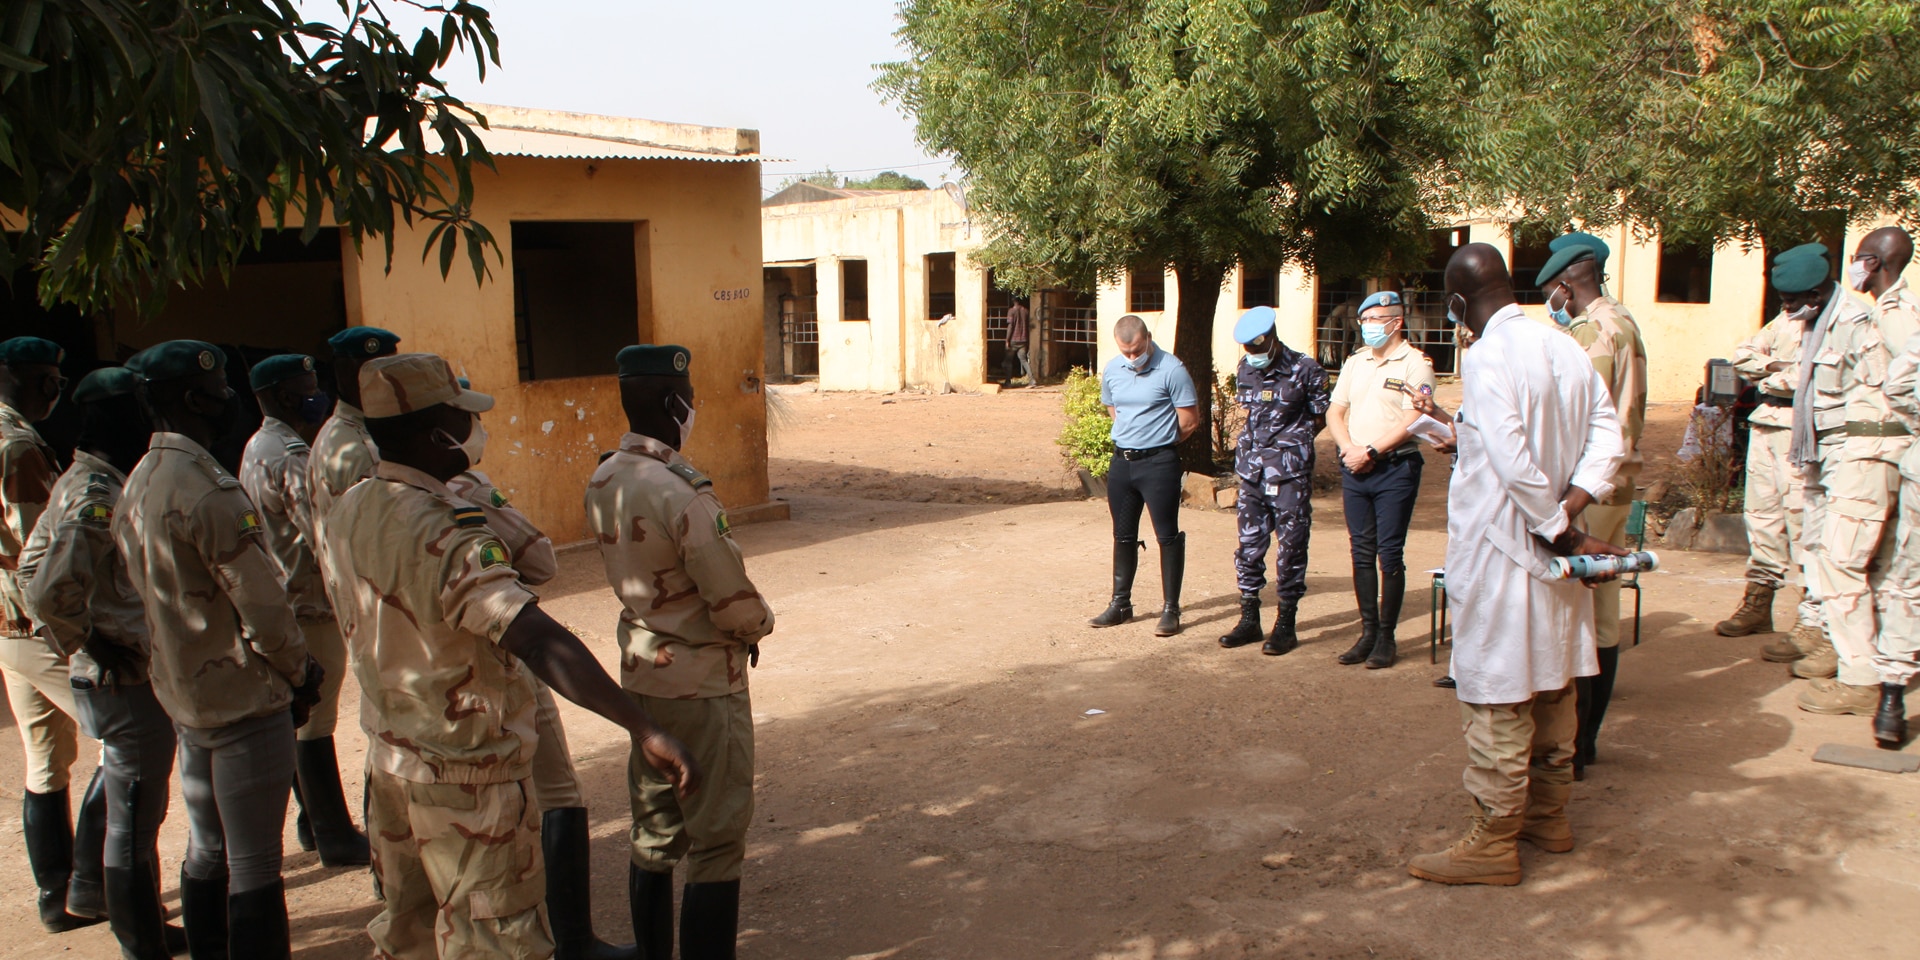  Carl Emery, begleitet von einem malischen Gendarmeriekommandanten in Tracht, steht vor neun uniformierten Offizieren.